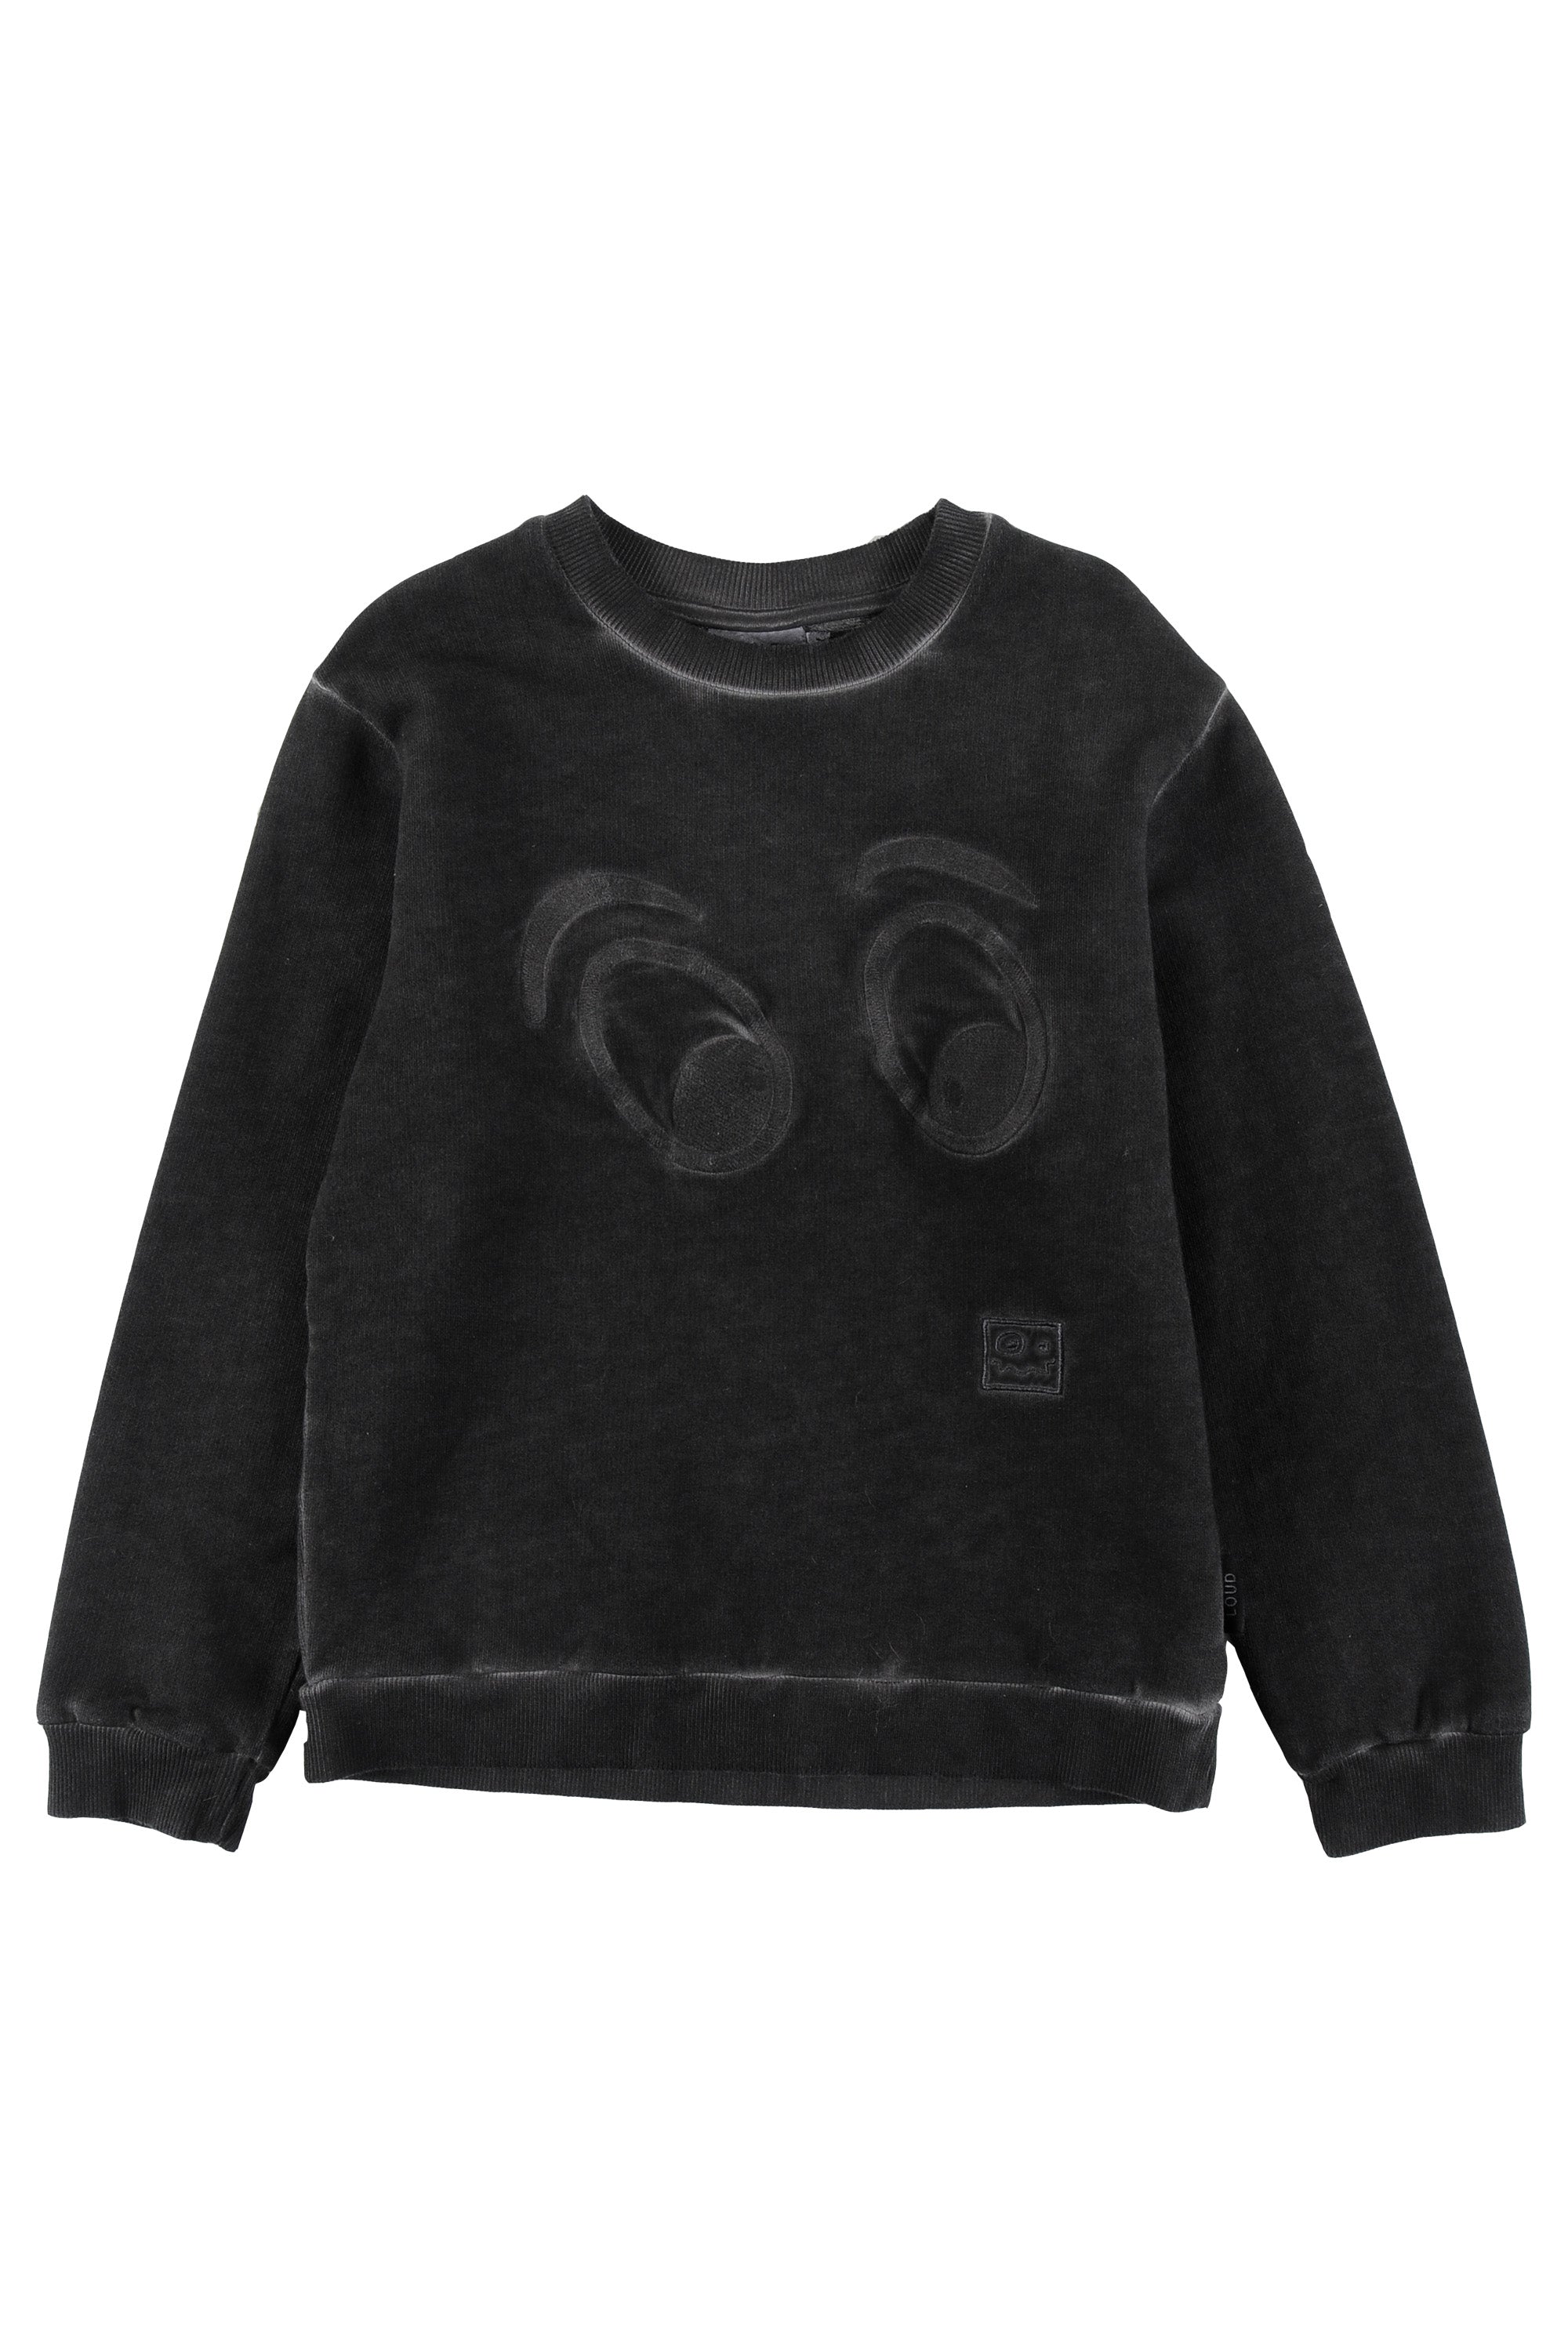 Loud Apparel Black Life Sweater – Panda and Cub